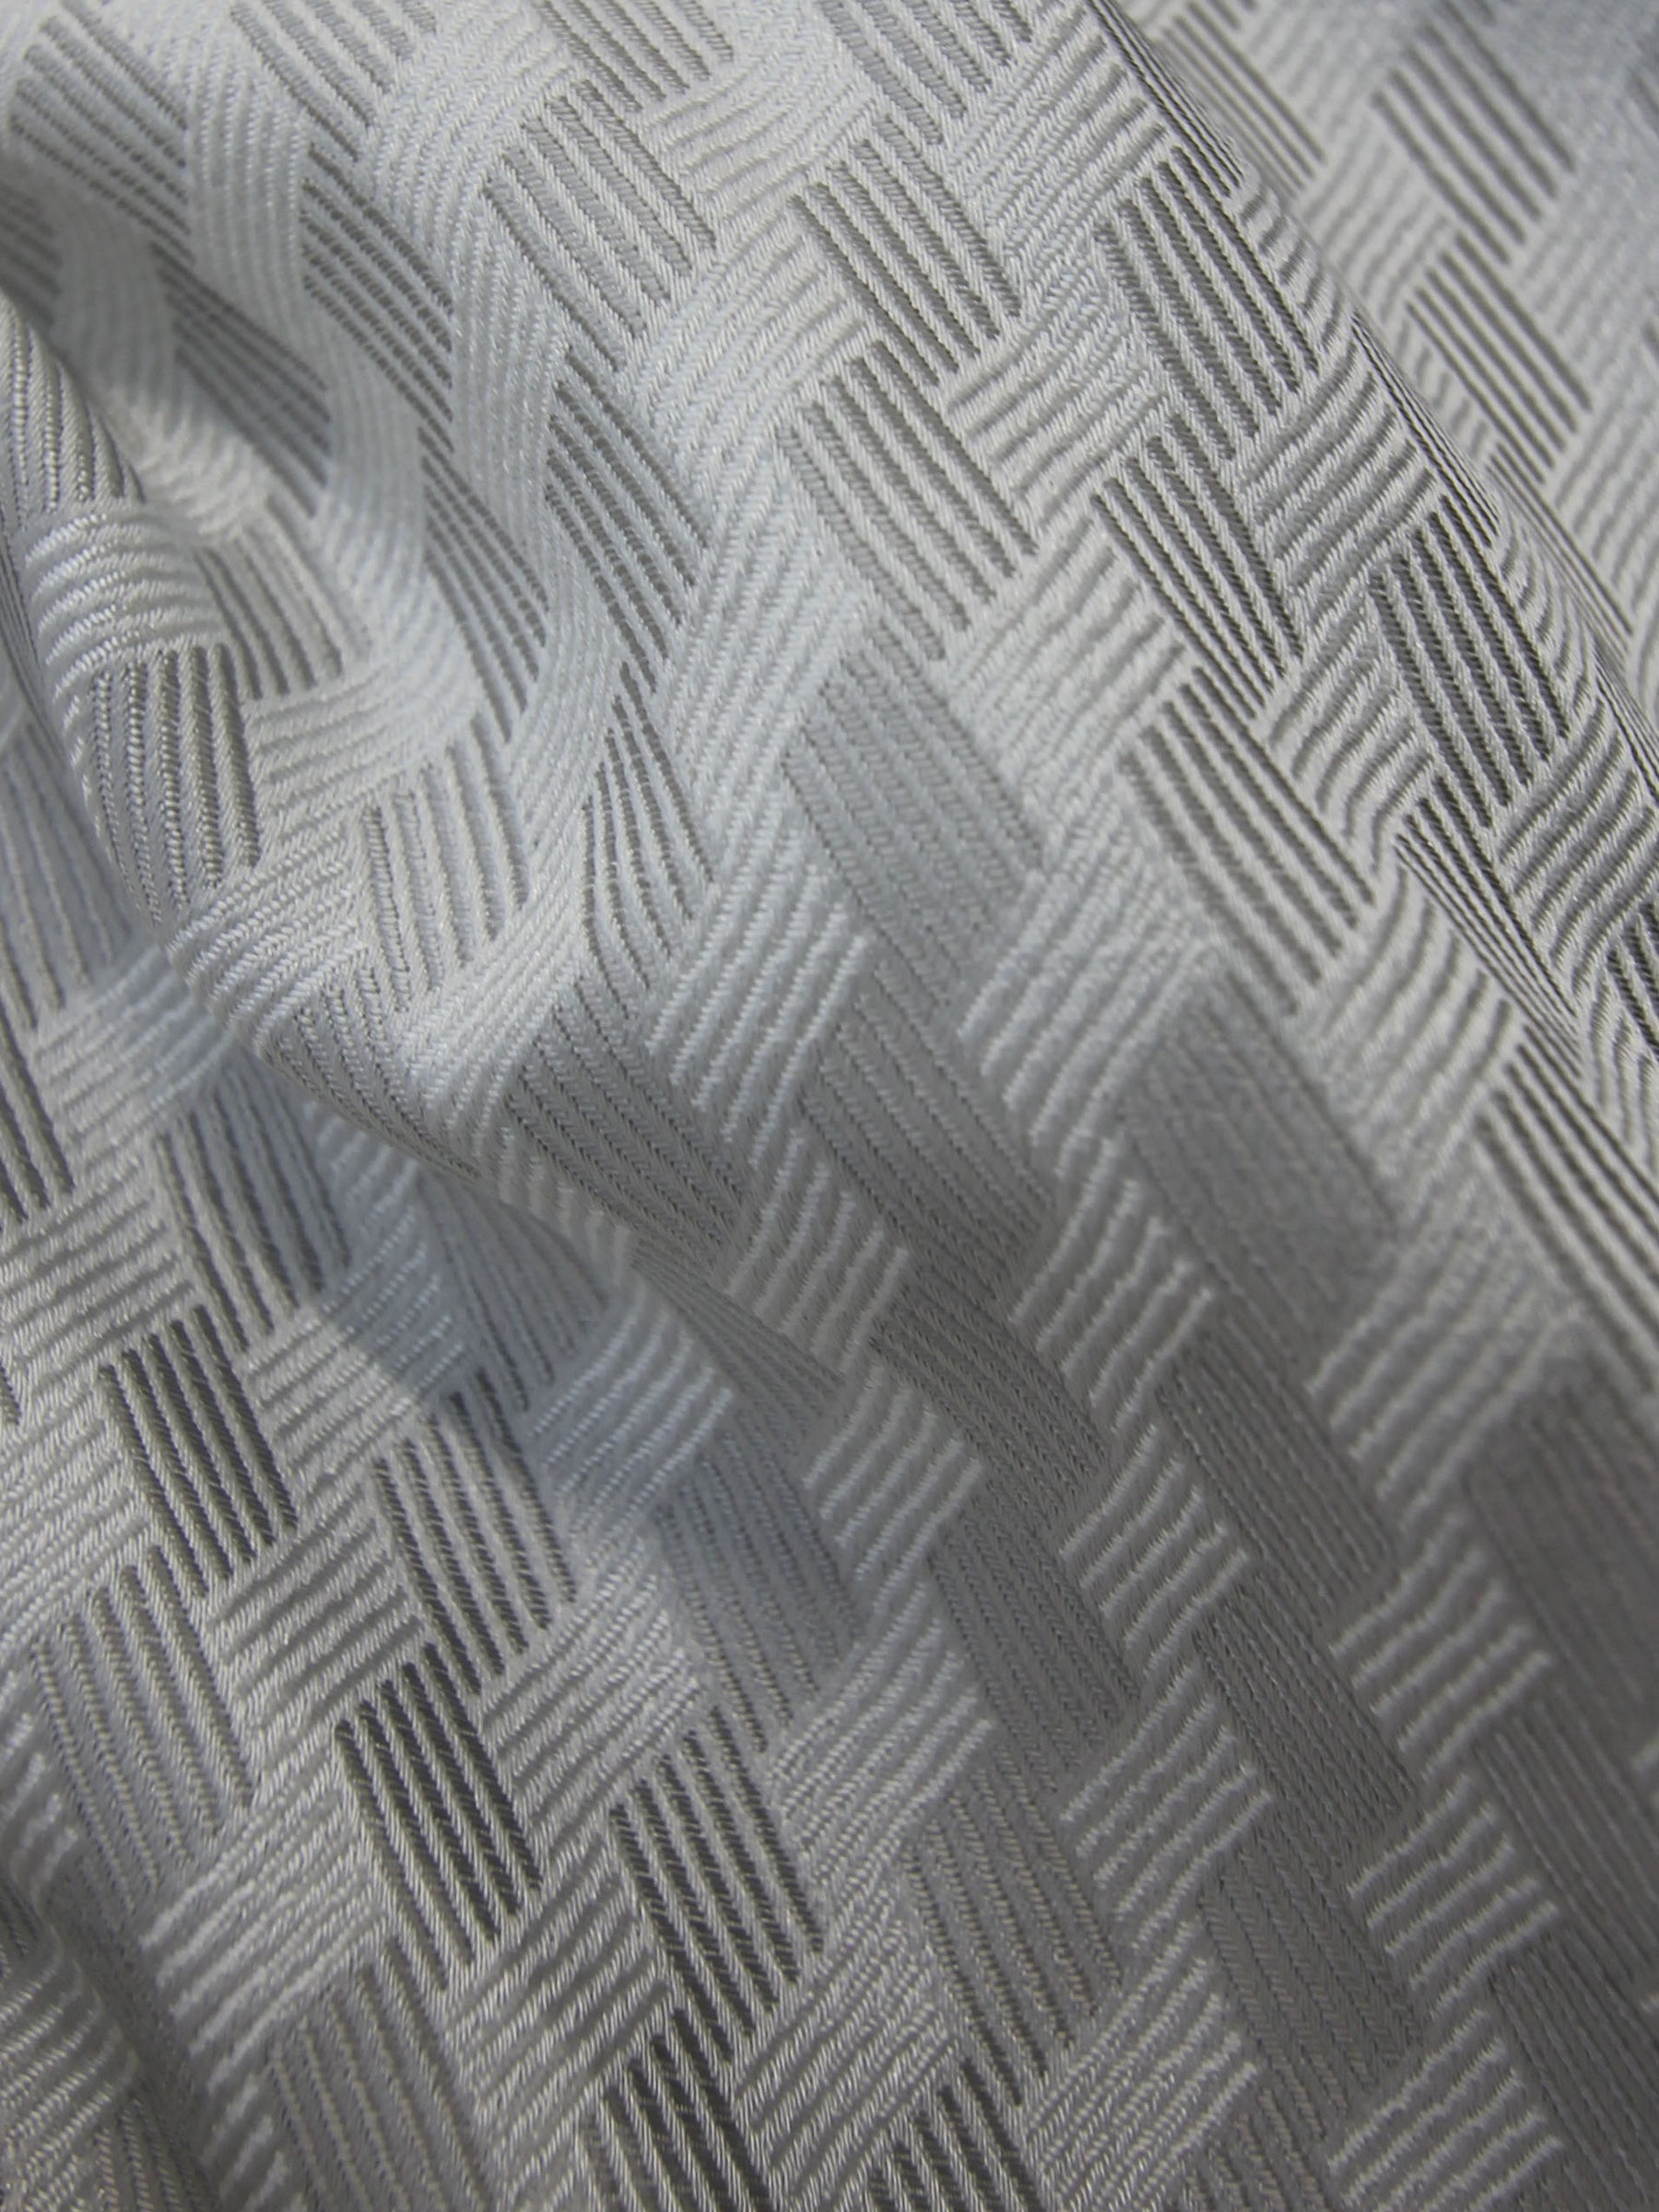 Waistcoat Fabric - Sorrento